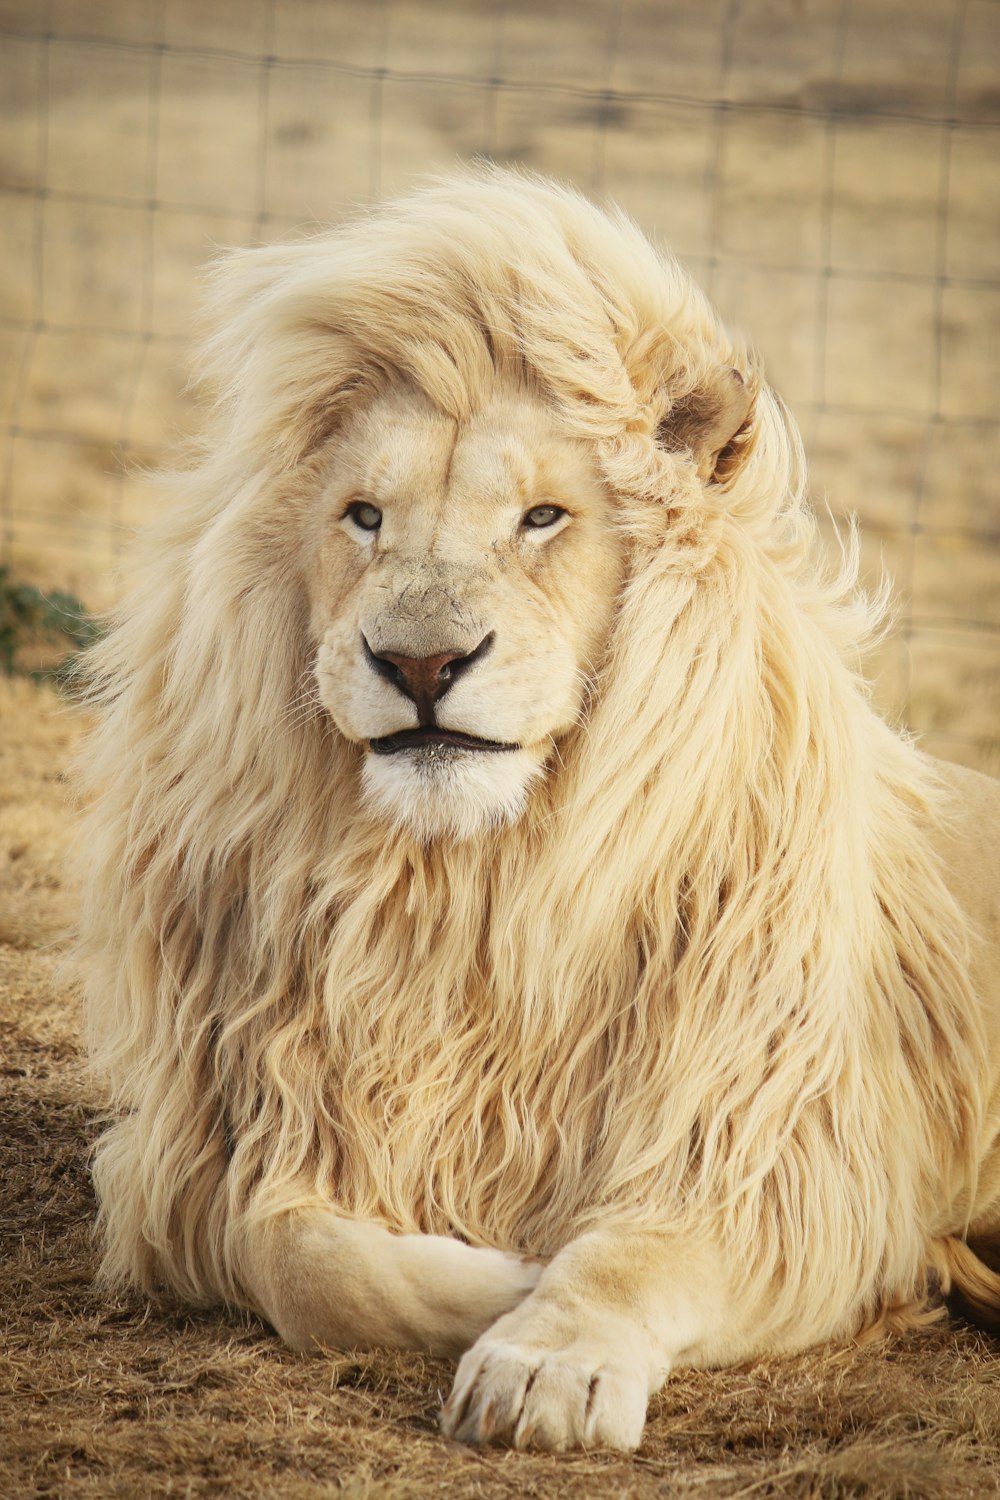 30k+ imágenes de león blanco | Descargar imágenes gratis en Unsplash